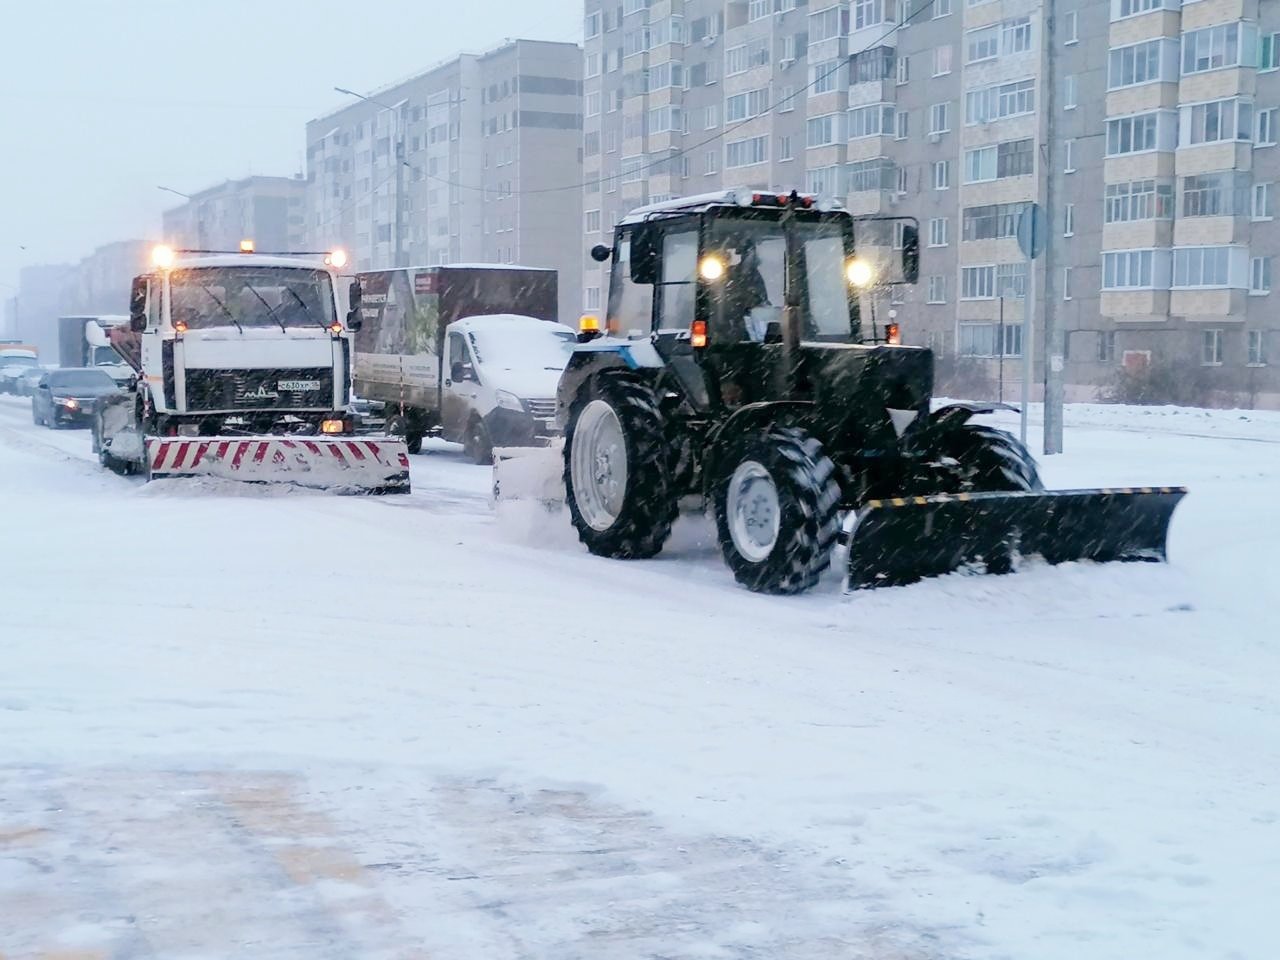 

Никаких оправданий быть не может: глава Удмуртии раскритиковал уборку снега на дорогах и тротуарах

